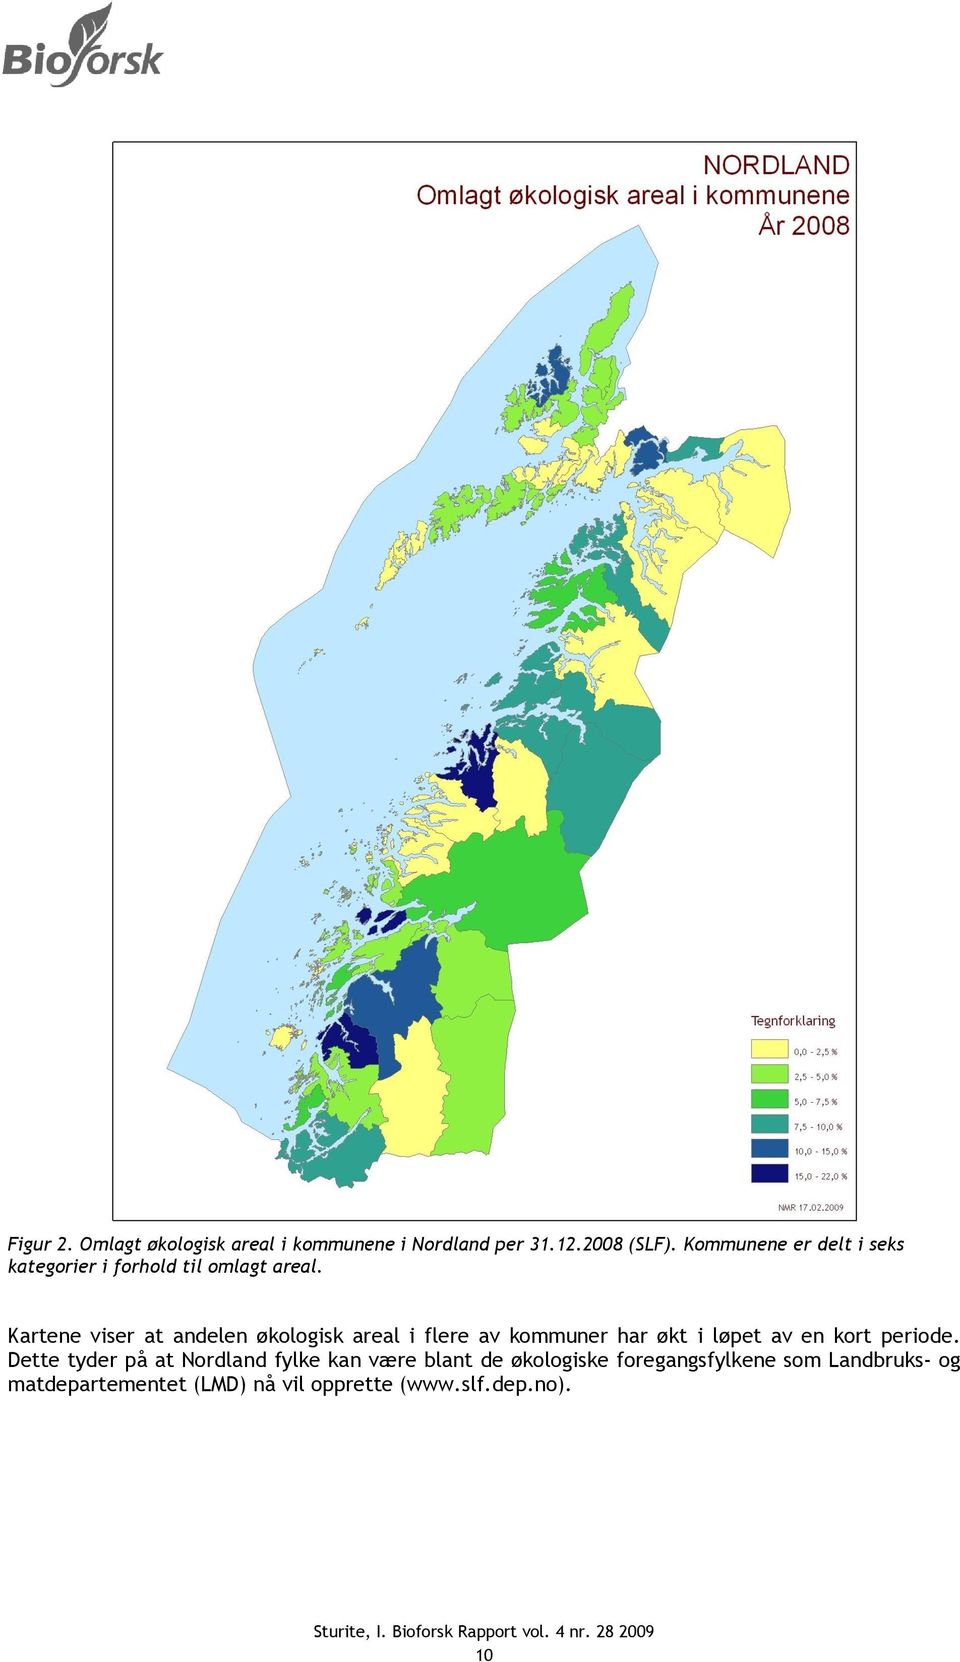 Kartene viser at andelen økologisk areal i flere av kommuner har økt i løpet av en kort periode.